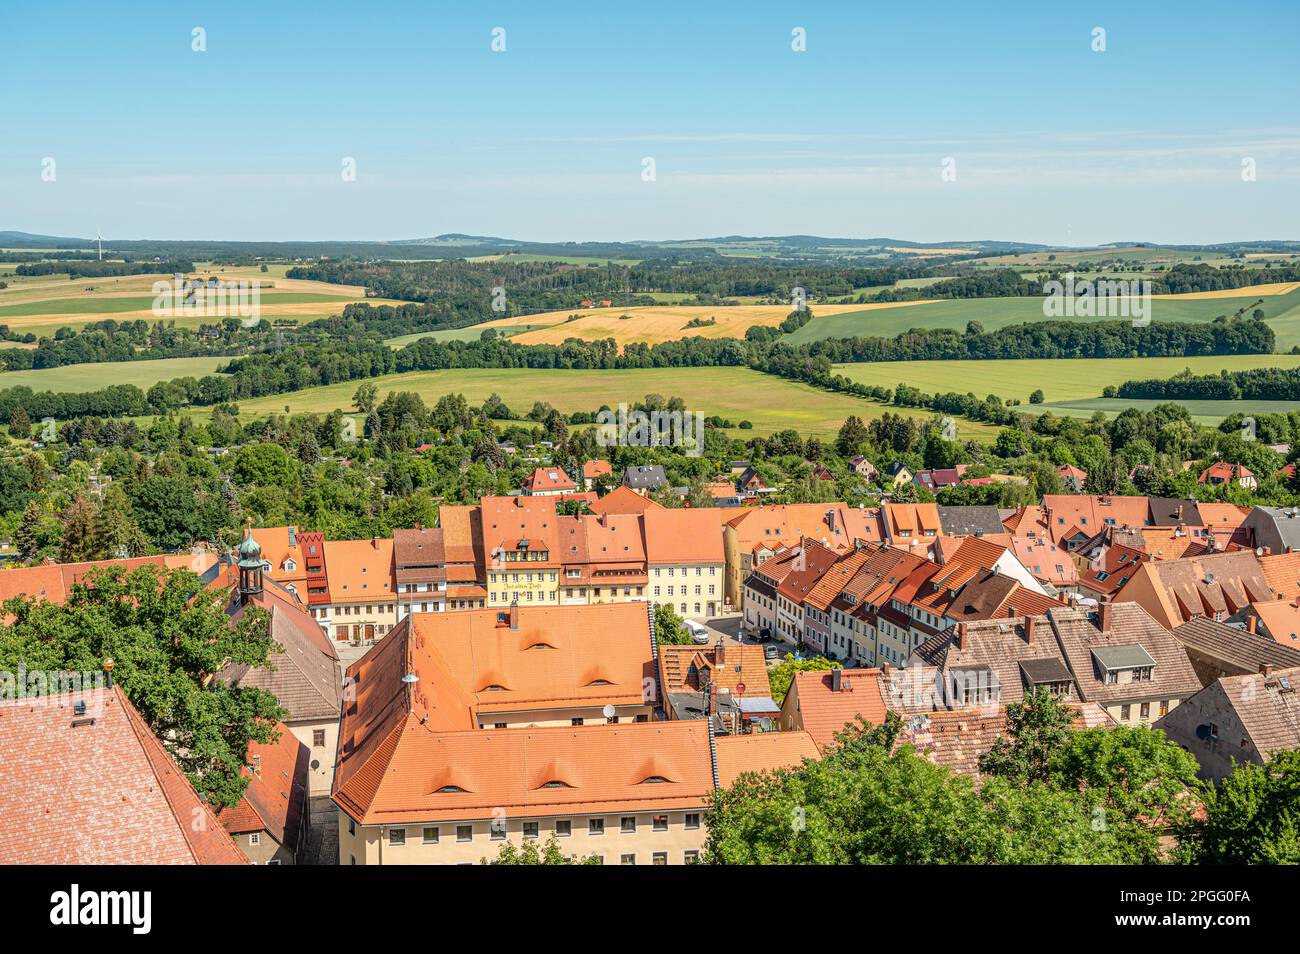 Vista de la ciudad vieja de Stolpen vista desde el castillo, Sajonia, Alemania Foto de stock